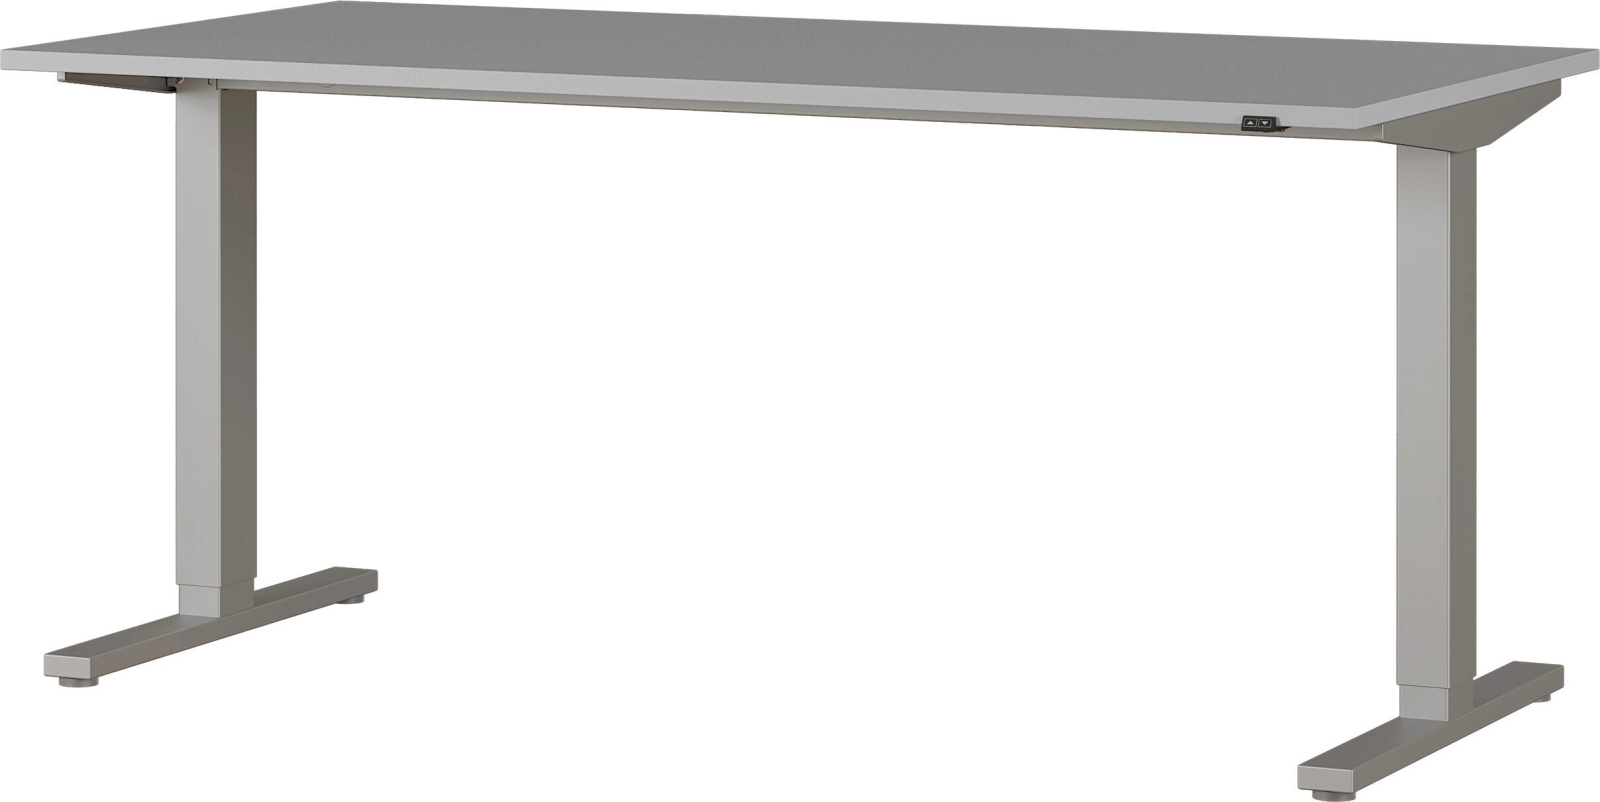 4242 höhenverstellbarer elektronischer Schreibtisch Arbeitstisch Bürotisch Büromöbel Lichtgrau/Silber oder Schwarz Nachbildung